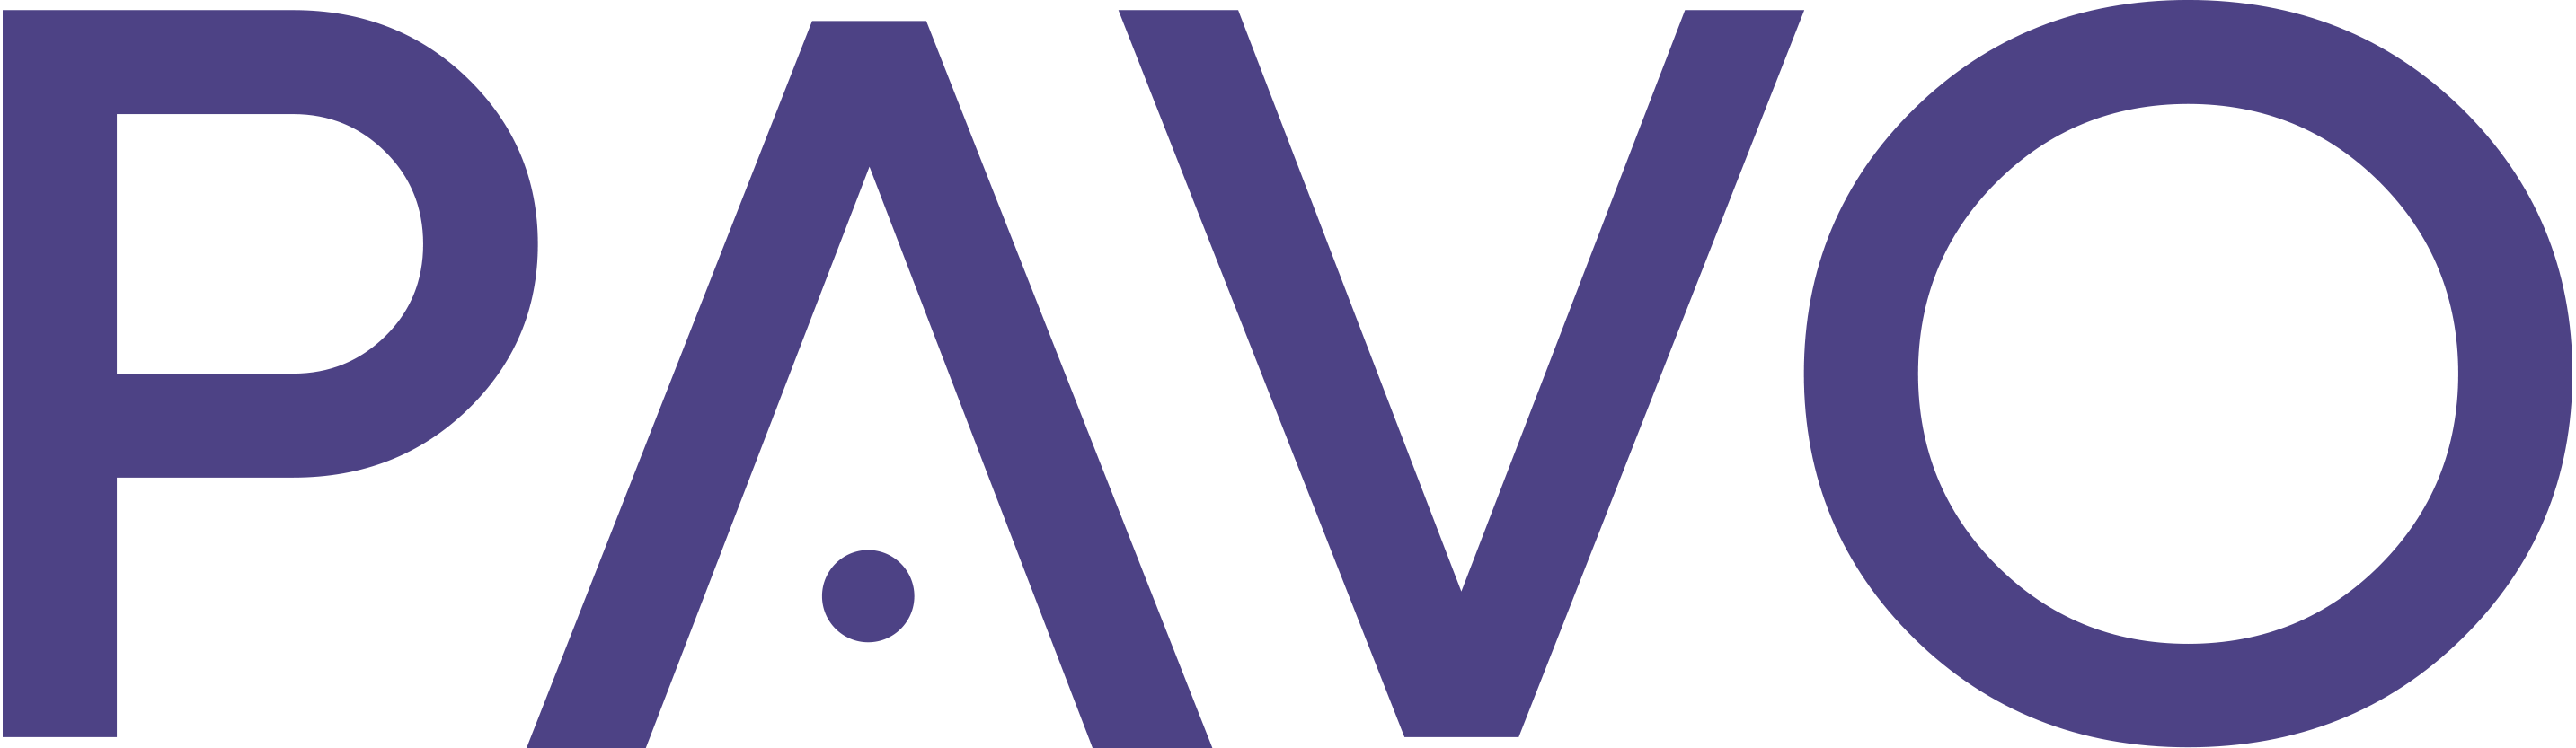 PAVO logo.png